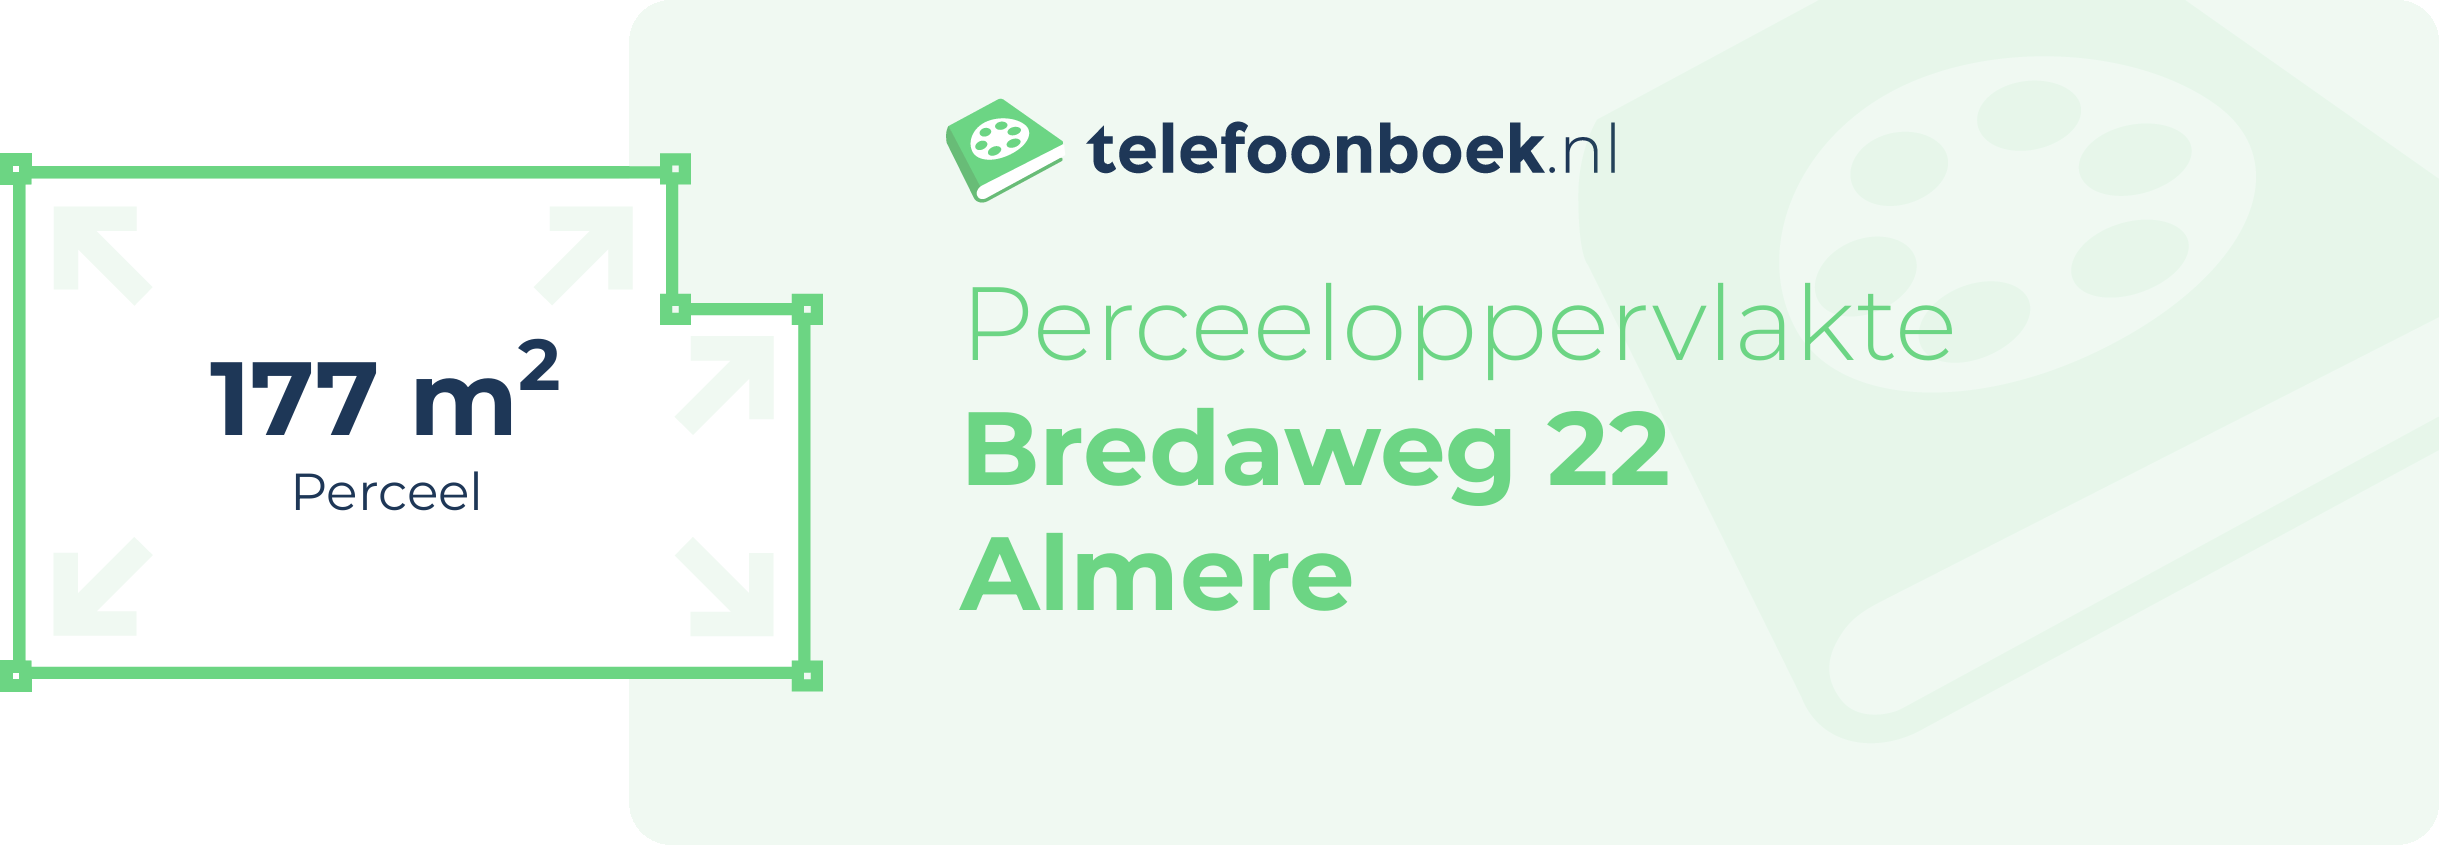 Perceeloppervlakte Bredaweg 22 Almere